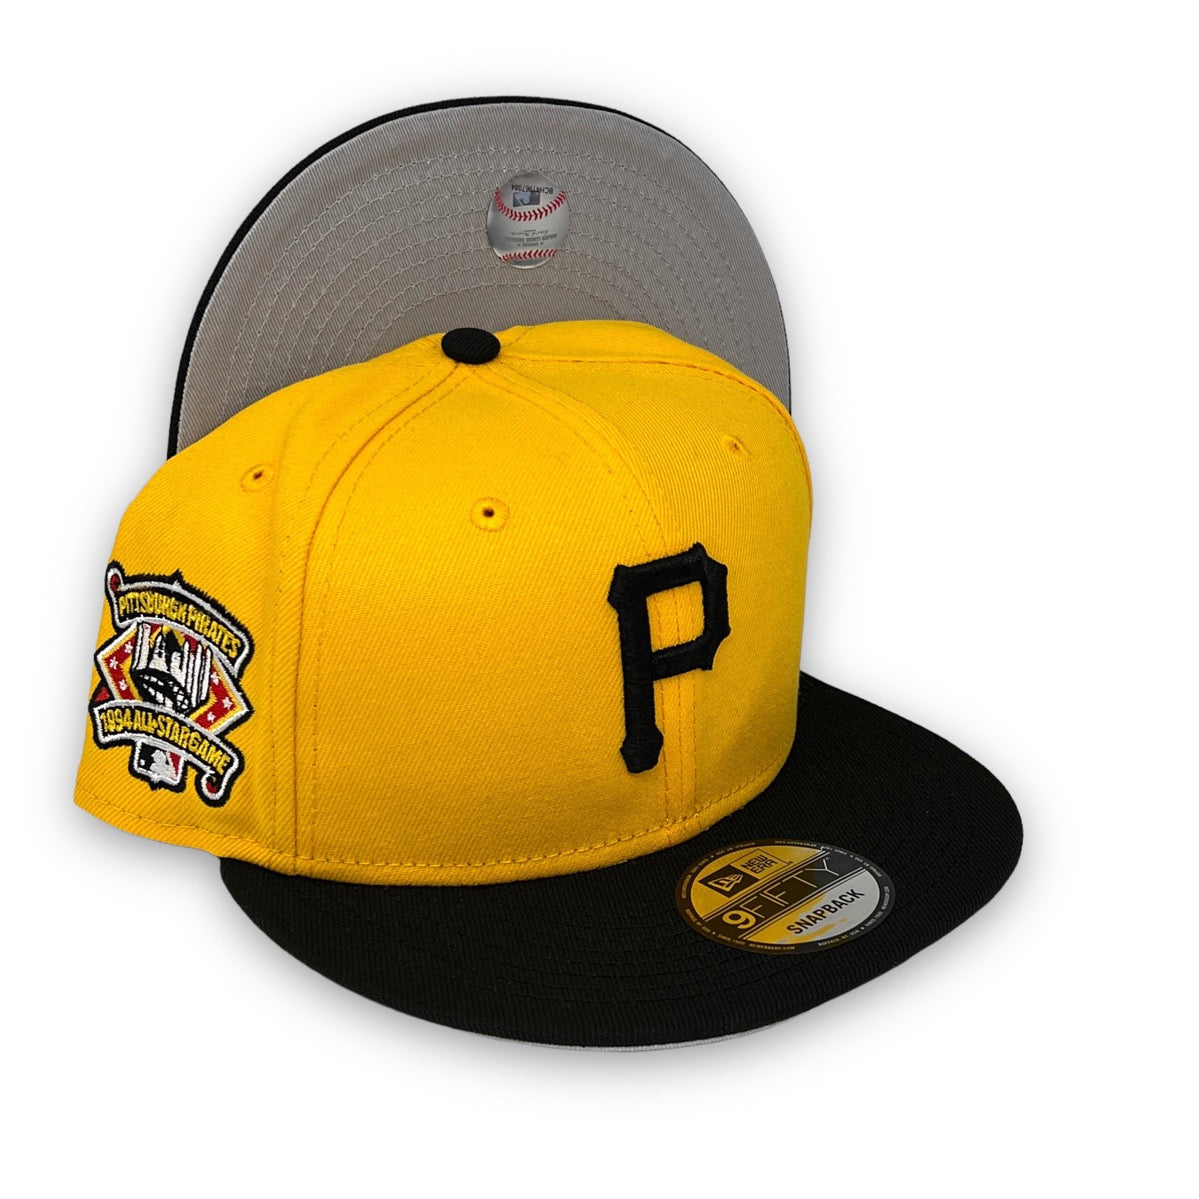 Pittsburgh Pirates New Era Snapback 9Fifty Yellow Black